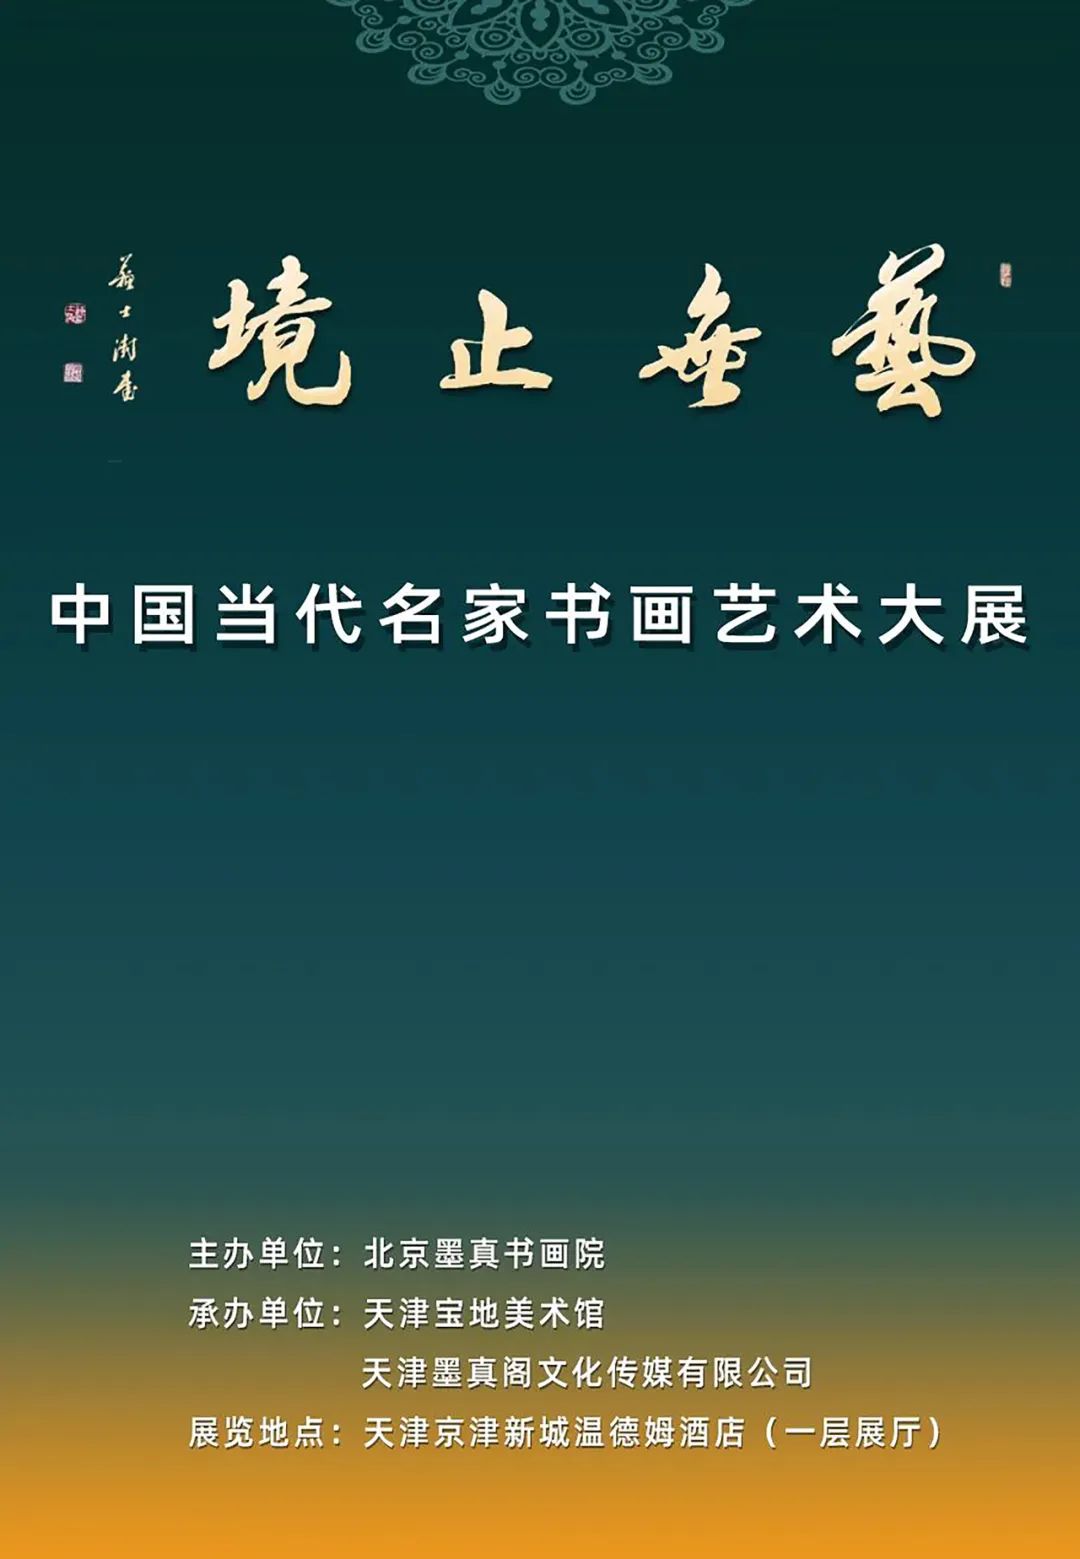 云之幻境，著名画家纪连彬应邀参展“艺无止境——中国当代名家书画艺术大展”